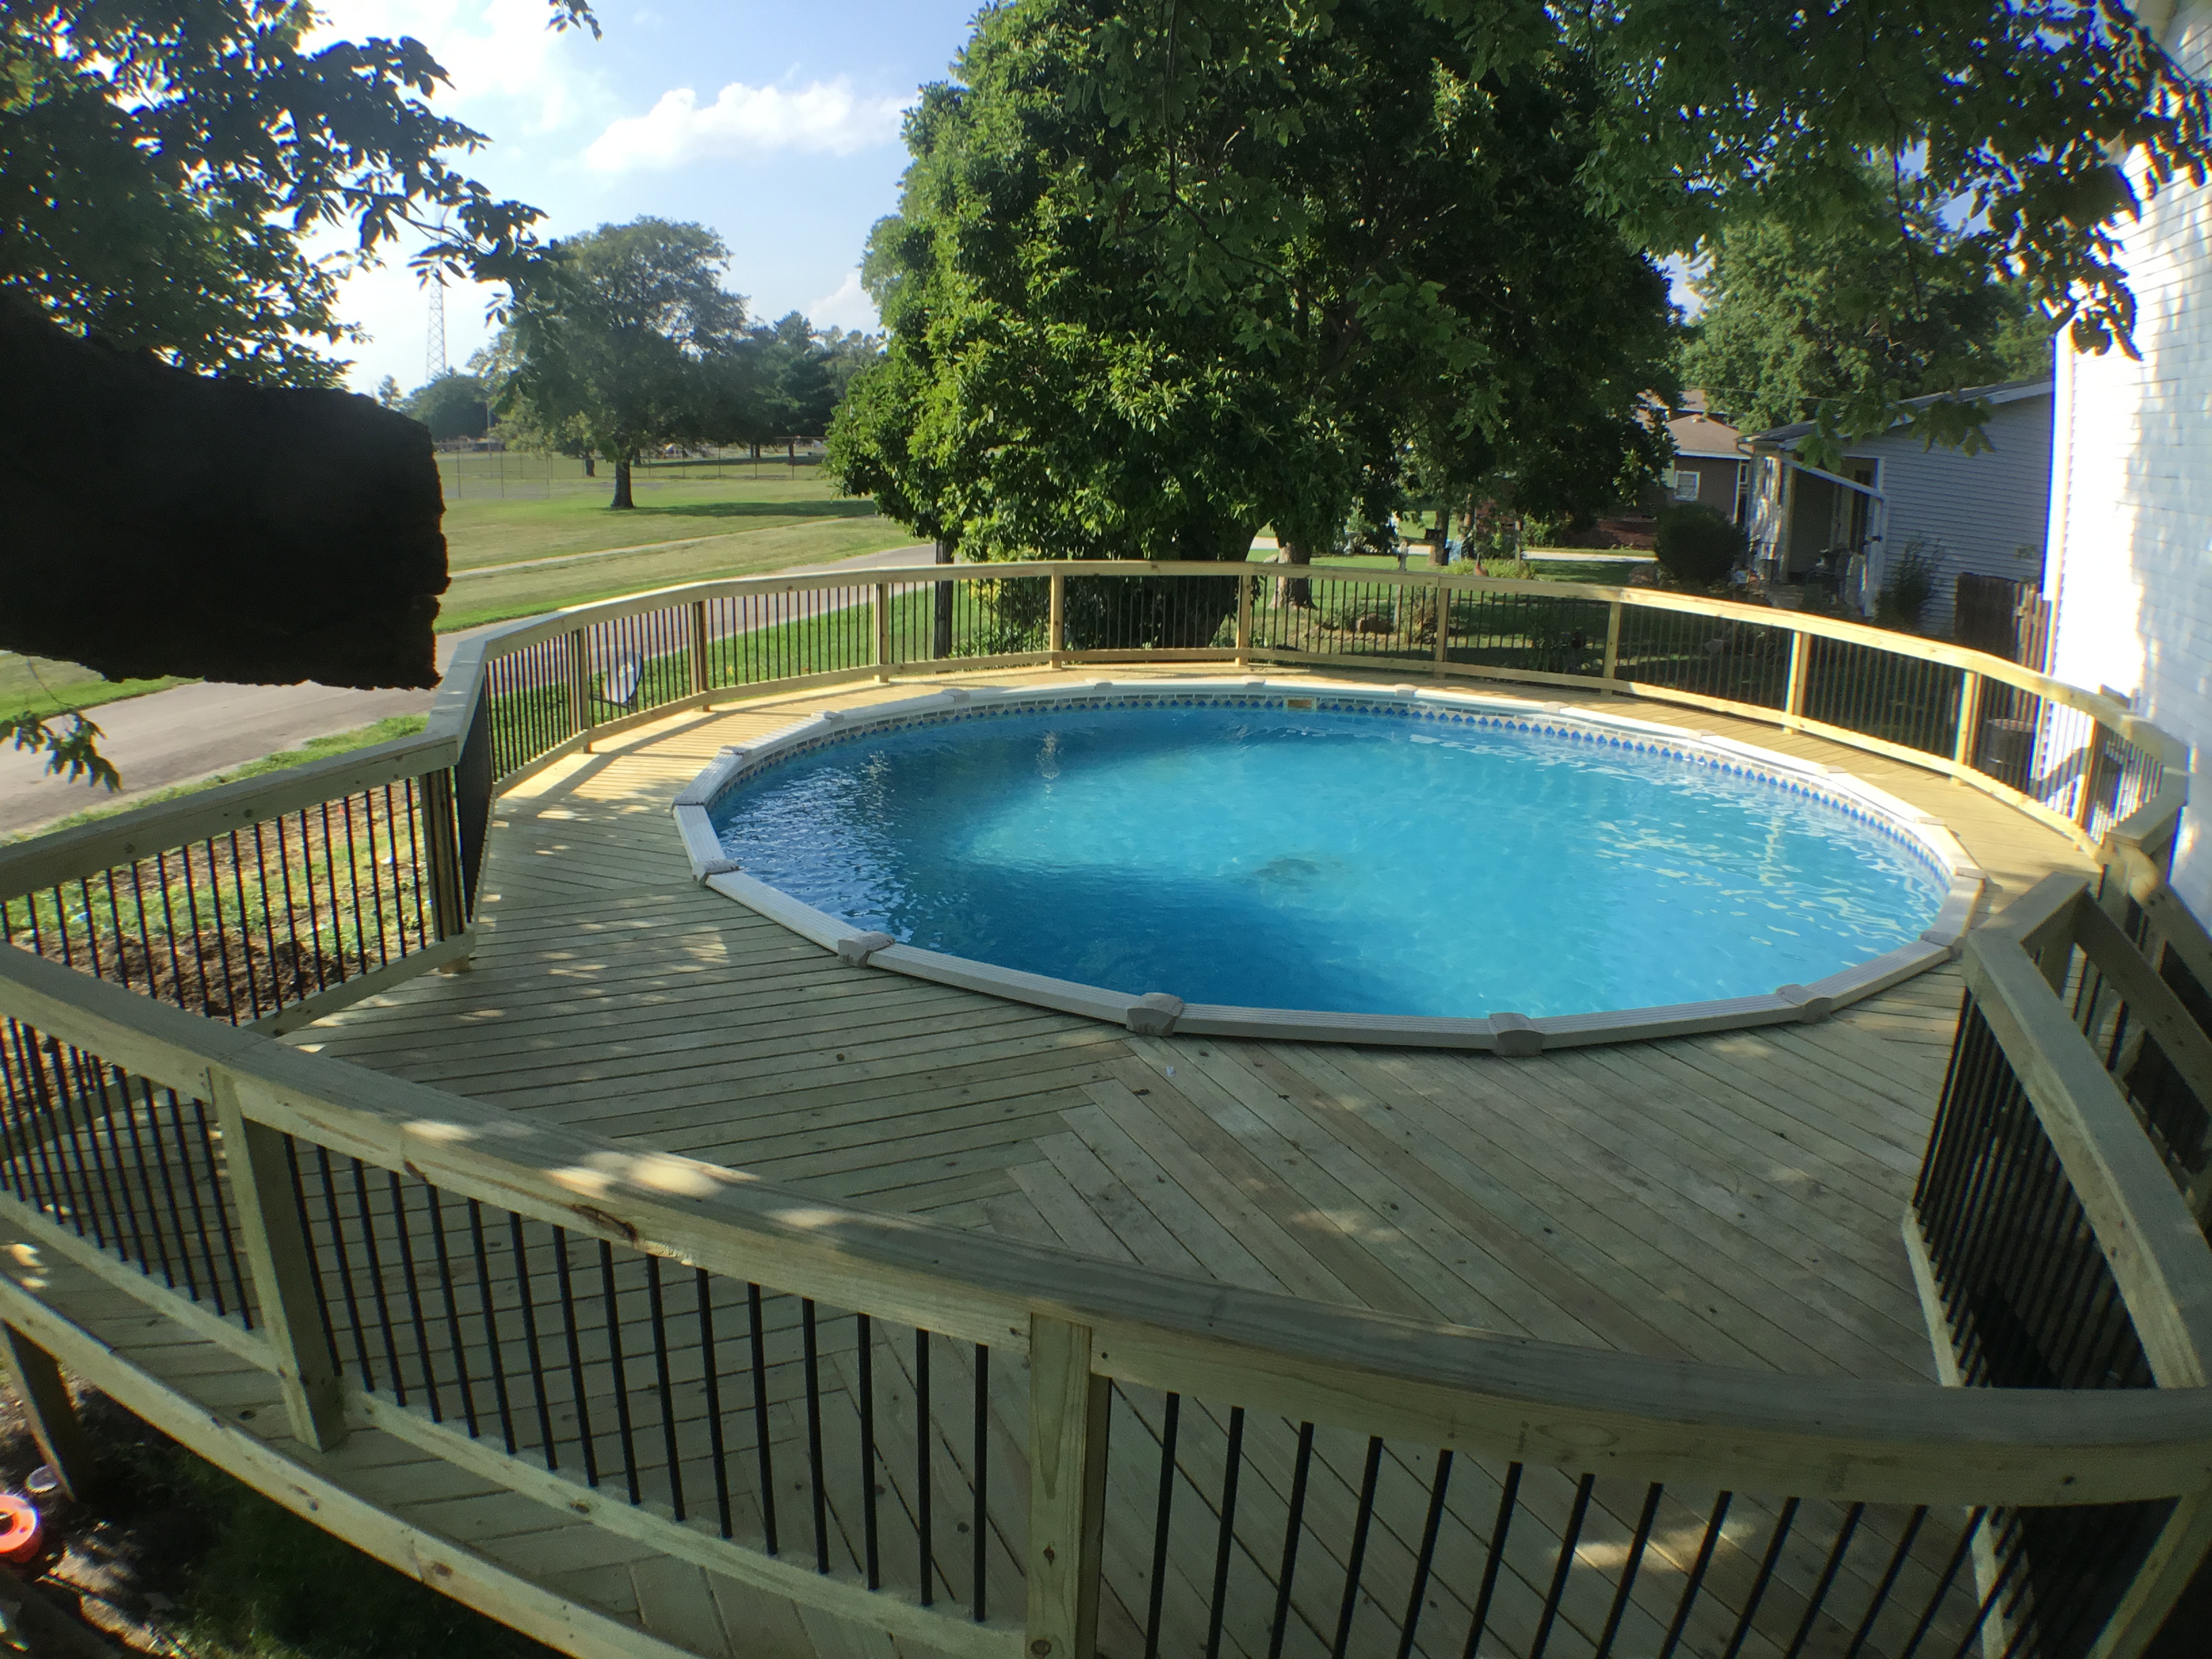 Heringbone pool deck